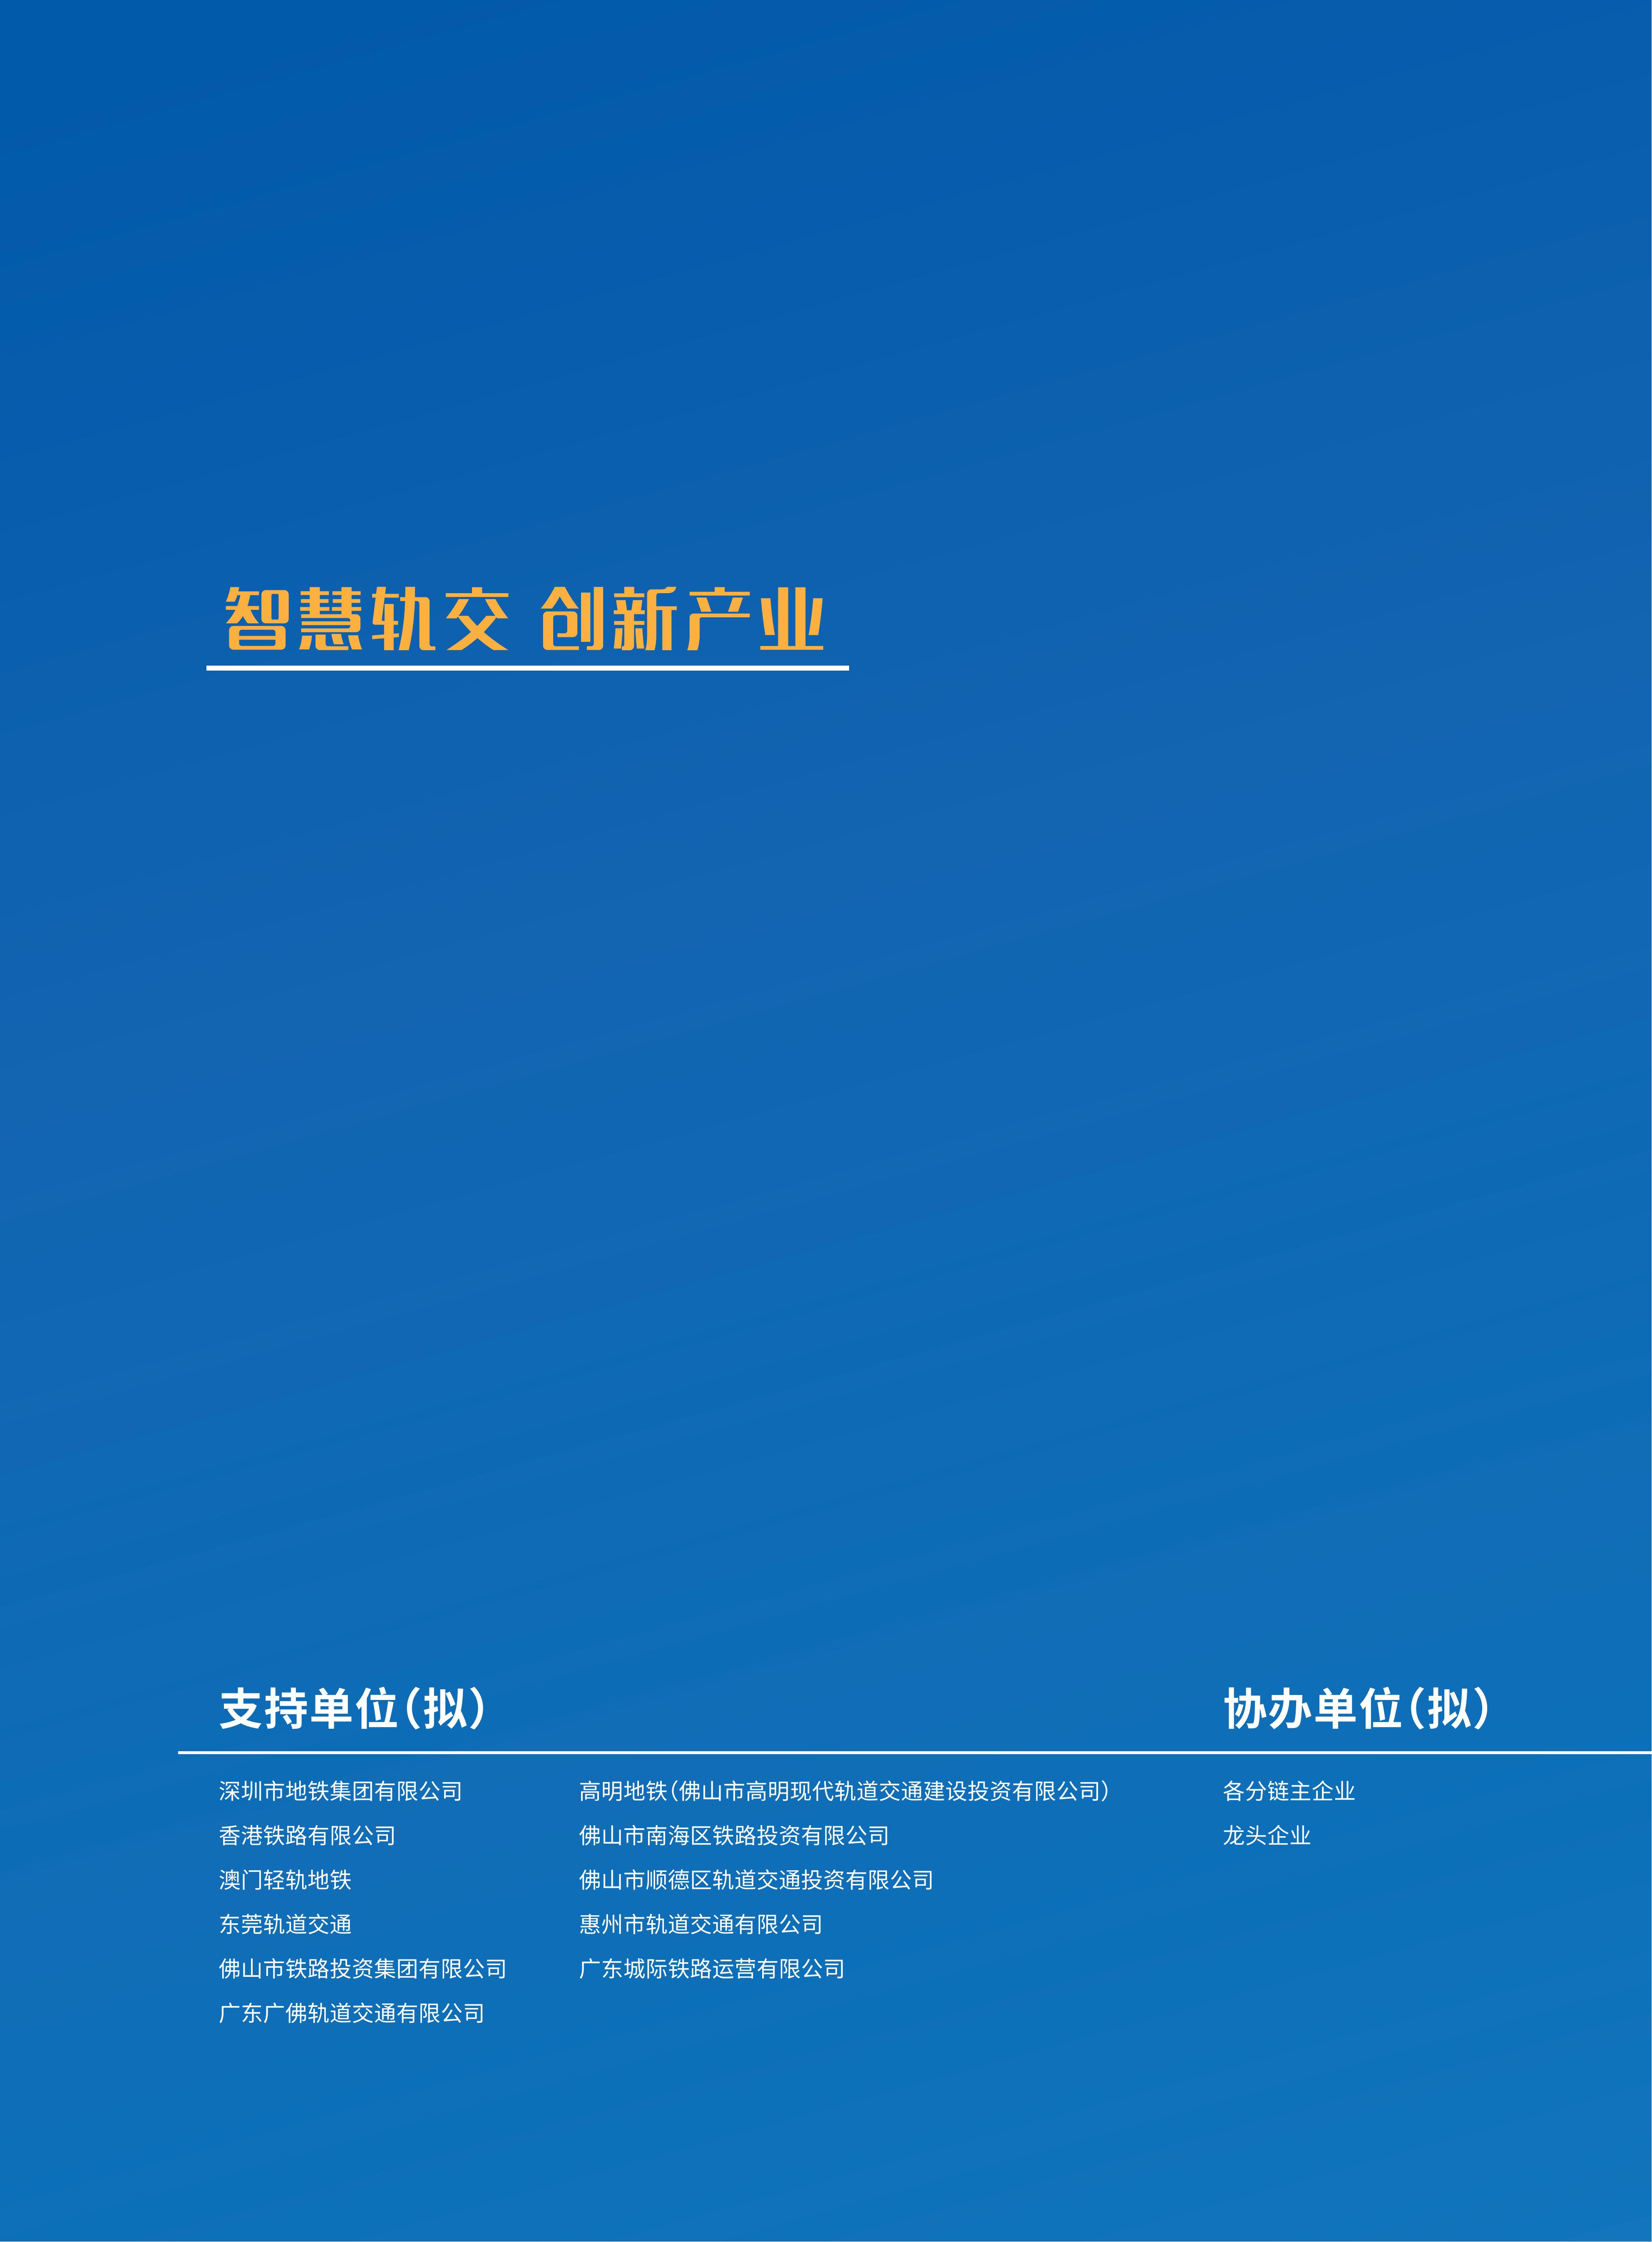 首届广州国际轨道交通展招商手册-20230306_01.jpg